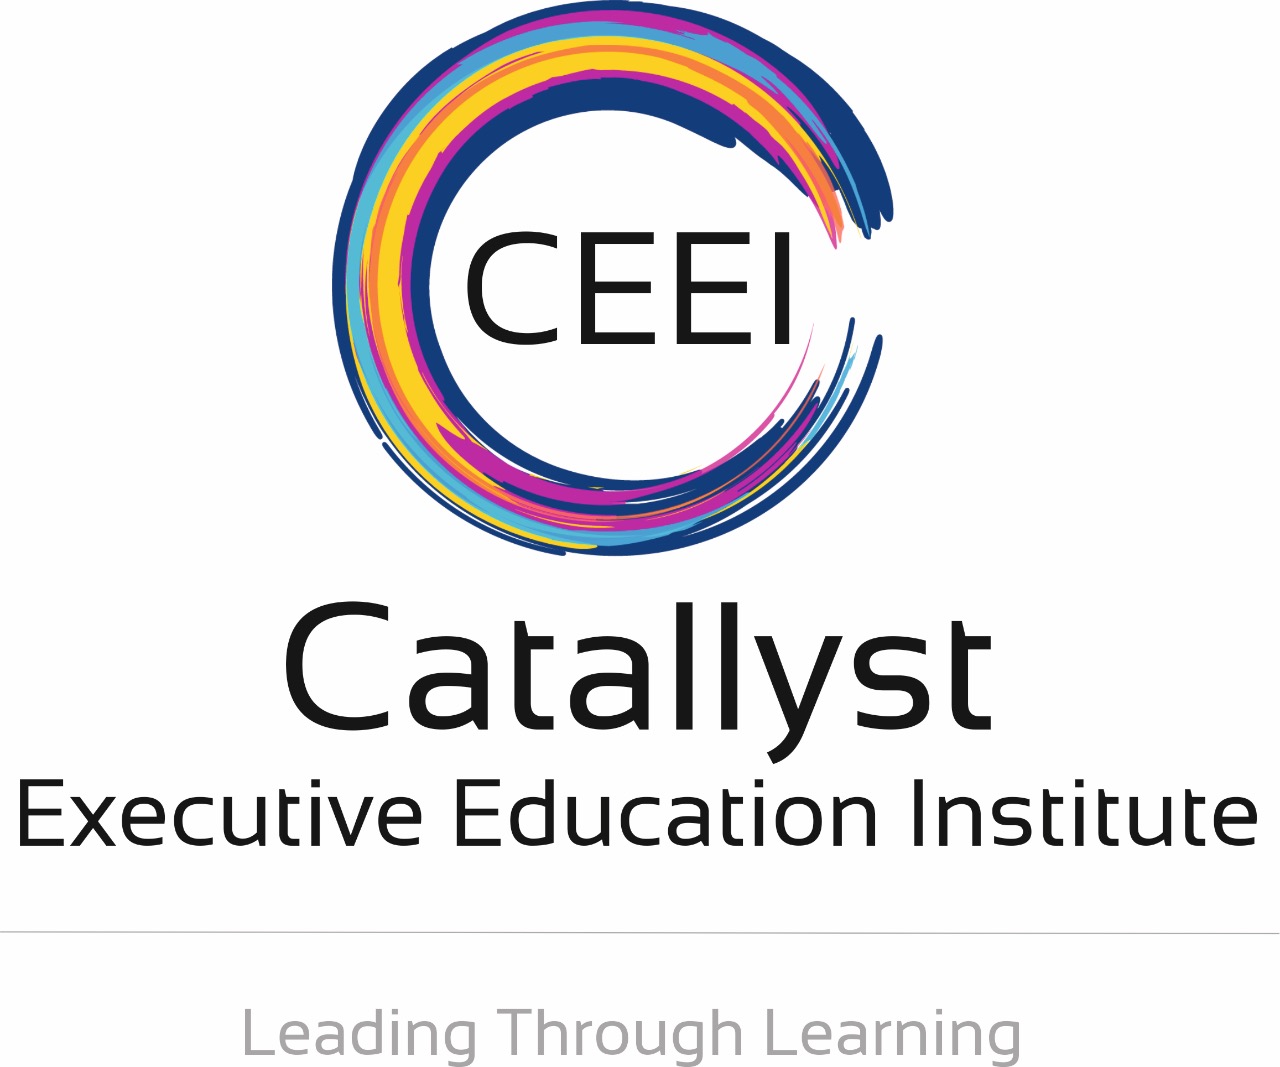 Catallyst Executive Education Institute